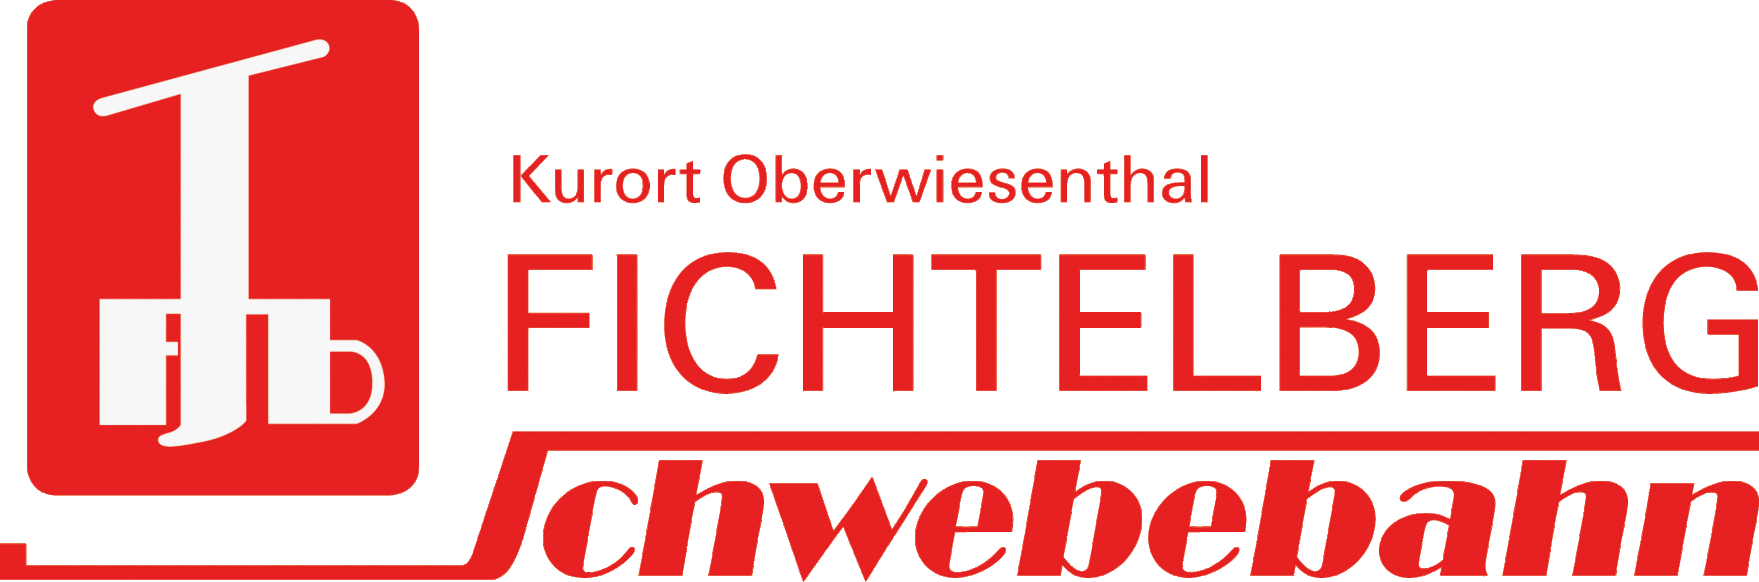 Logo Fichtelberg Schwebebahn Kurort Oberwiesenthal 